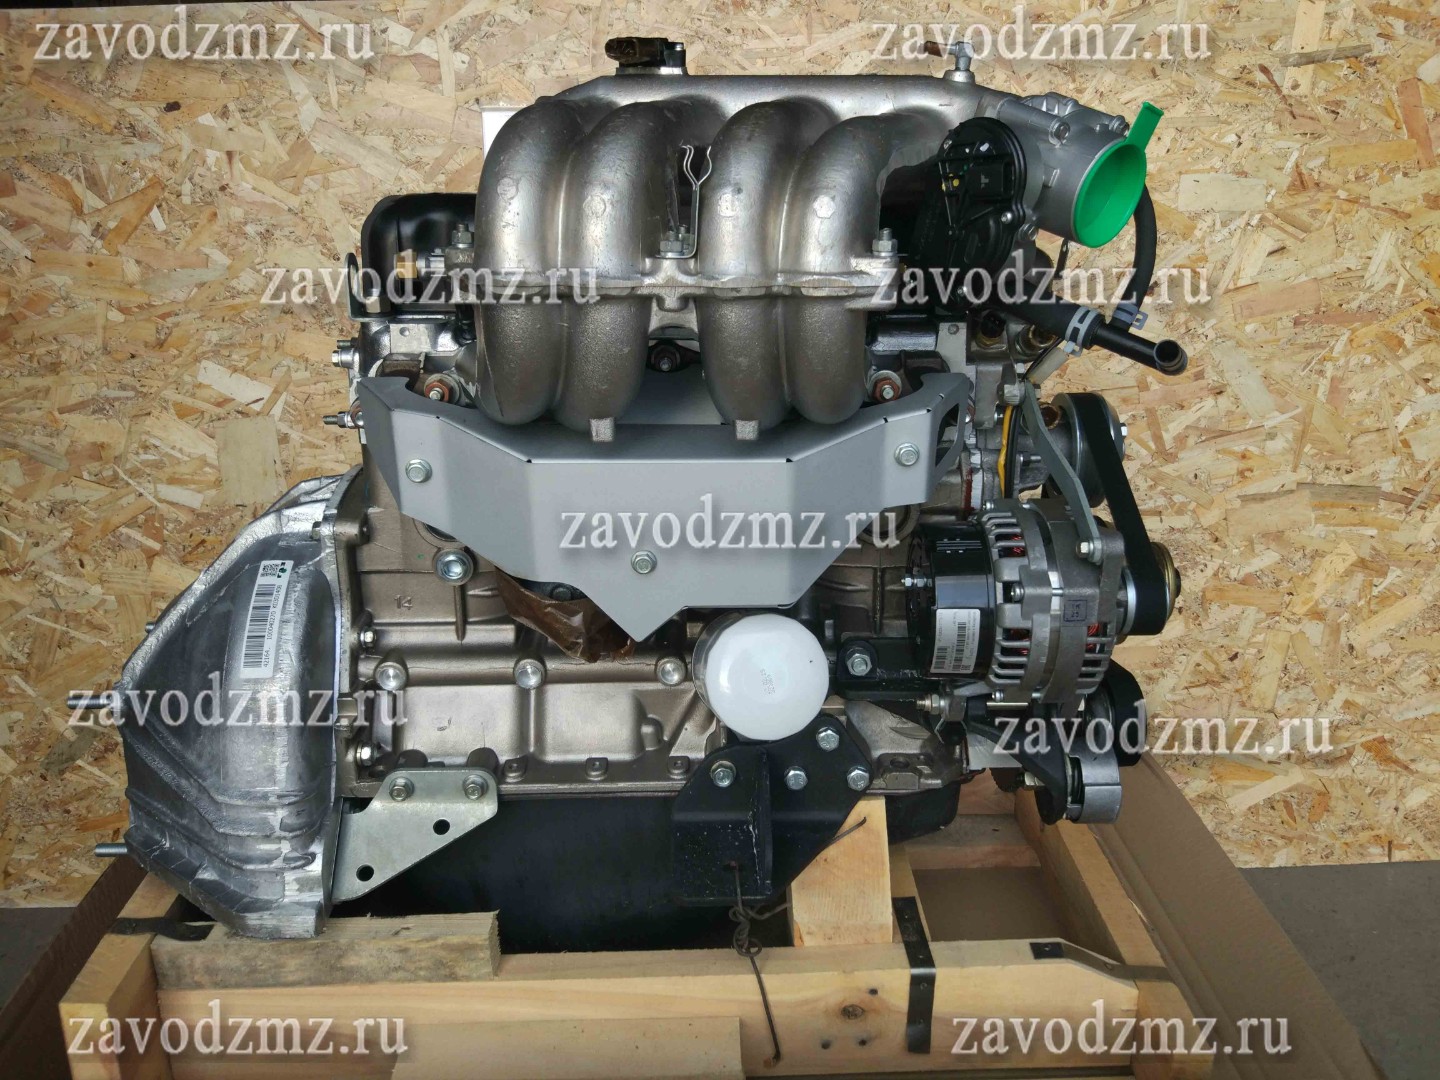 Двигатель умз отзывы. Двигатель УМЗ 4213. УМЗ-42164. Двигатель УМЗ фото с женщиной крышкой.